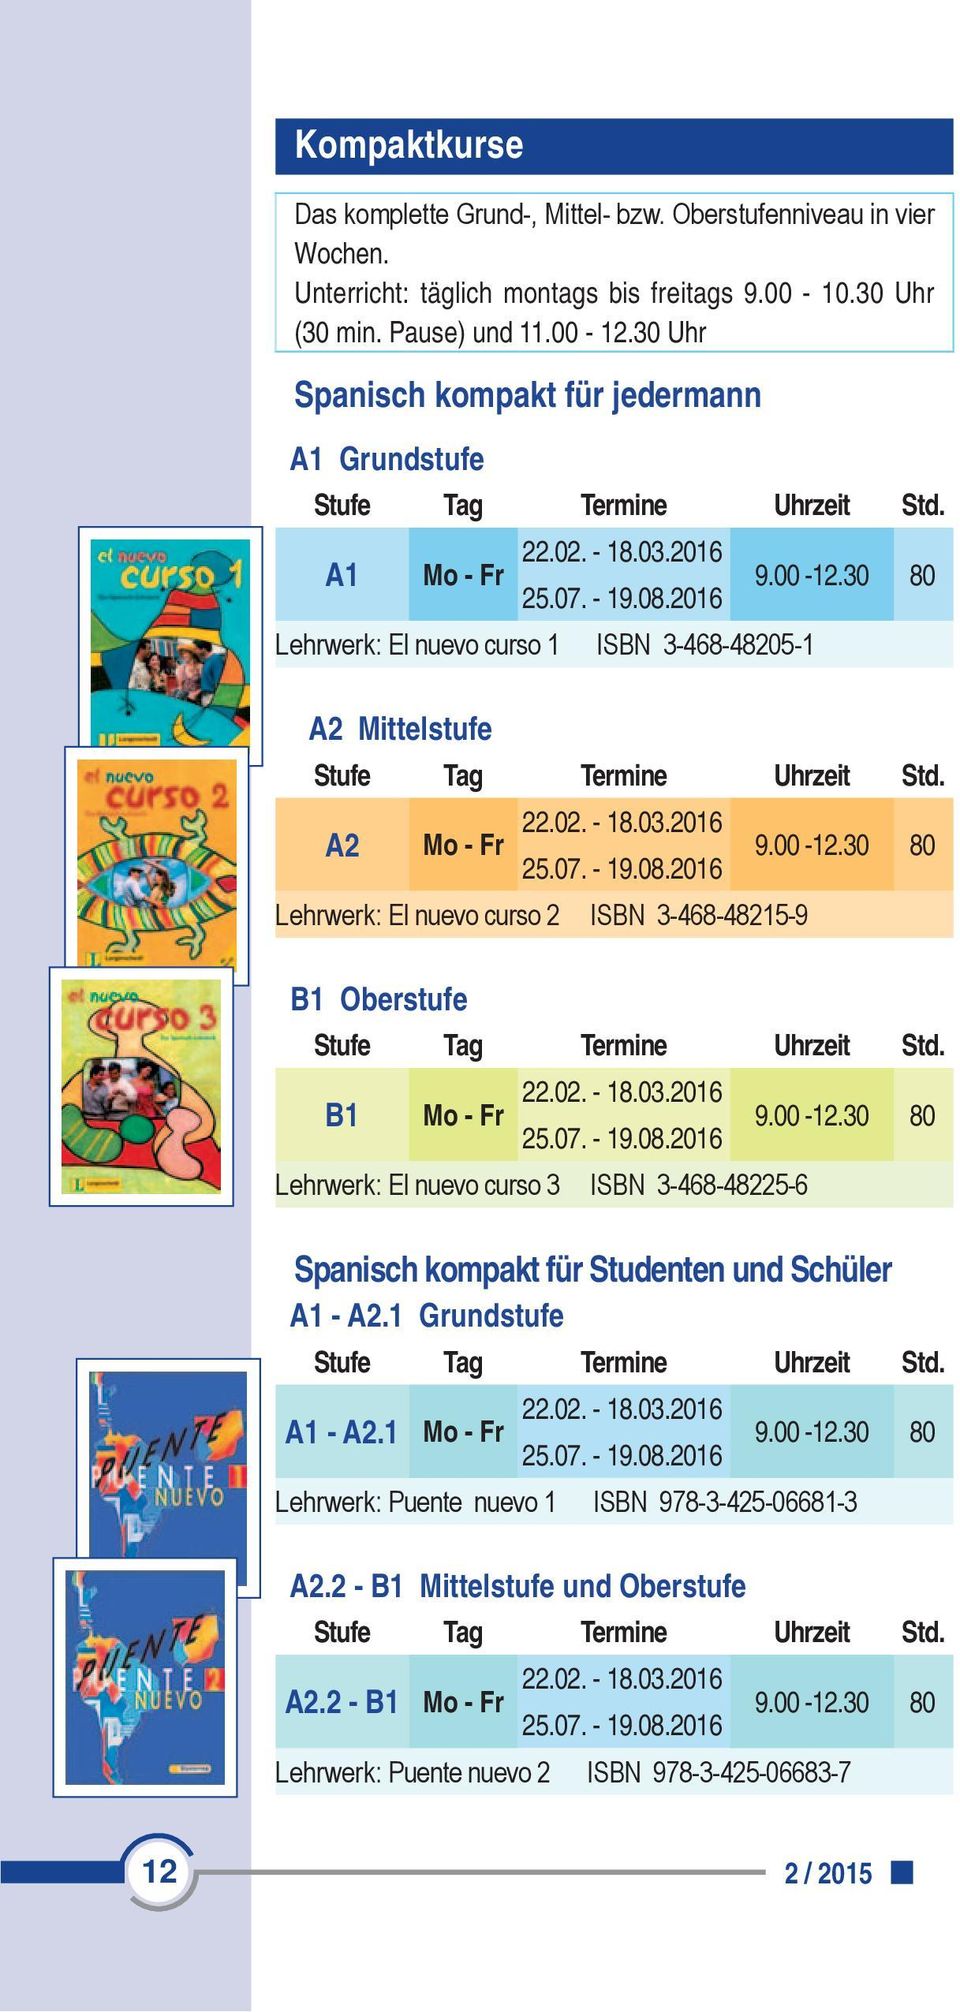 02. - 18.03.2016 9.00-12.30 80 25.07. - 19.08.2016 Lehrwerk: El nuevo curso 3 ISBN 3-468-48225-6 Spanisch kompakt für Studenten und Schüler A1 - A2.1 Grundstufe A1 - A2.1 Mo - Fr 22.02. - 18.03.2016 9.00-12.30 80 25.07. - 19.08.2016 Lehrwerk: Puente nuevo 1 ISBN 978-3-425-06681-3 A2.